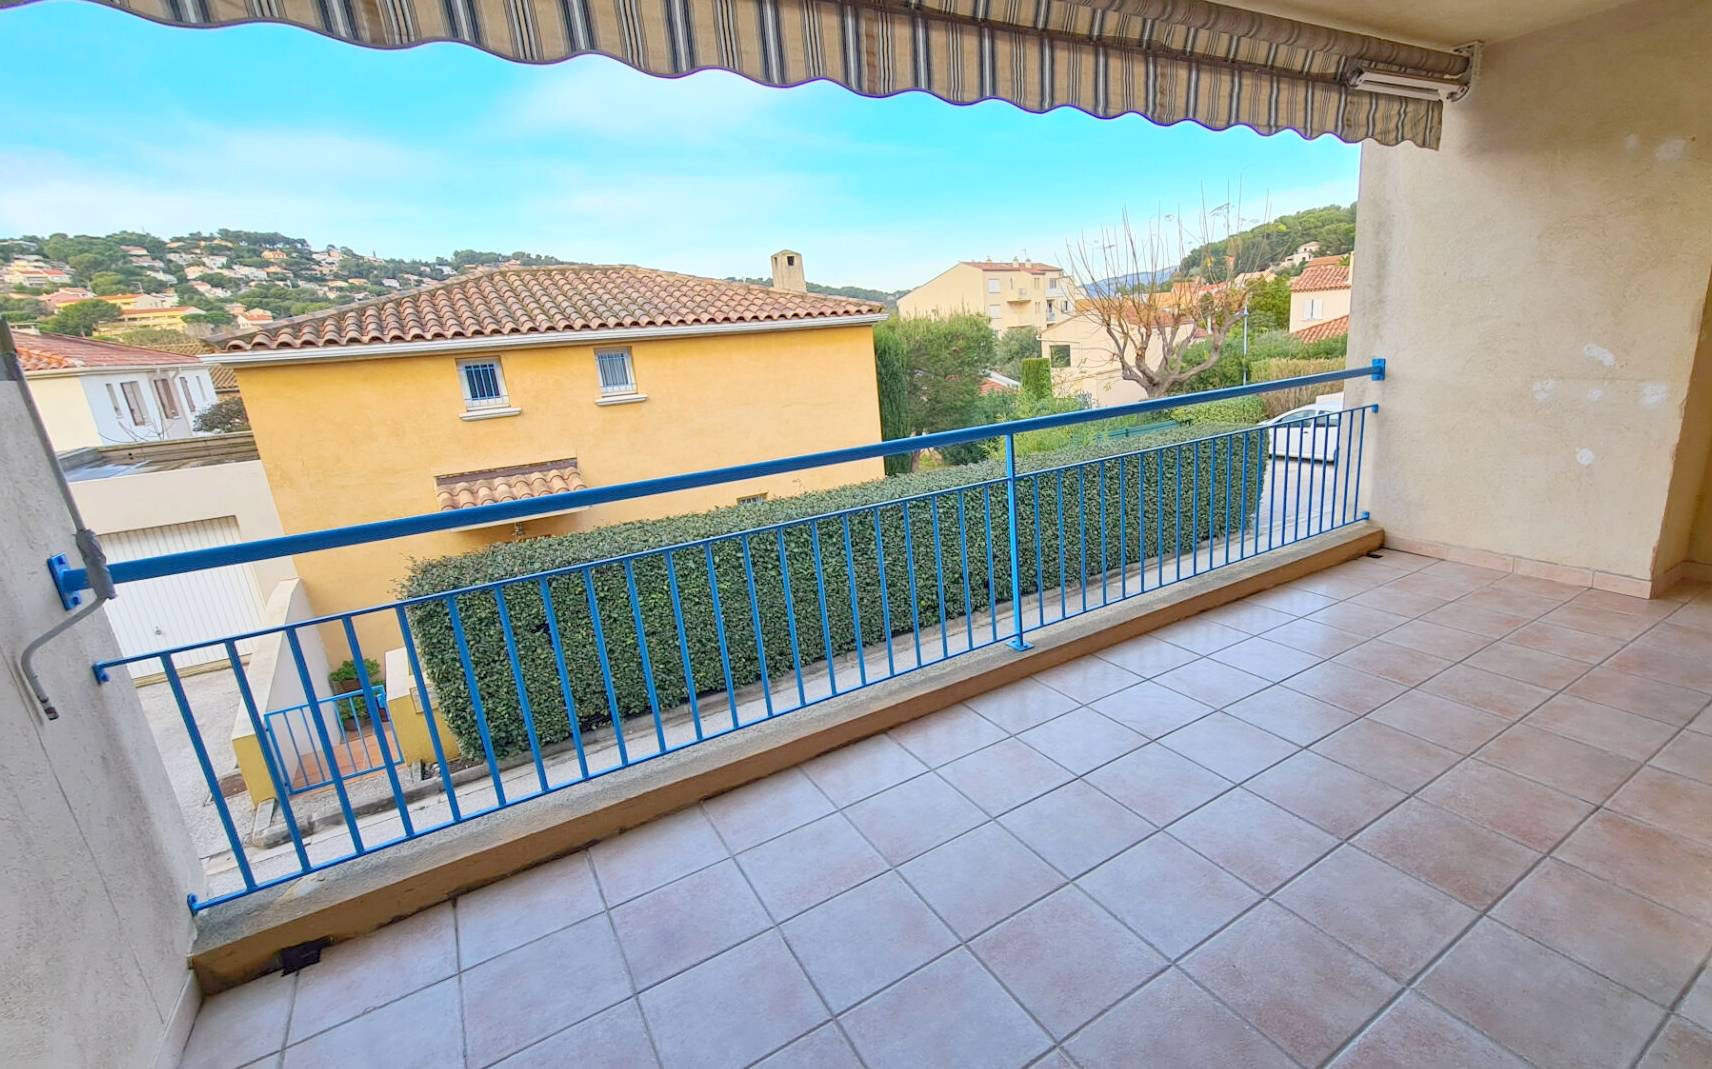 Appartement avec terrasse à vendre dans le village côtier de Saint-Mandrier